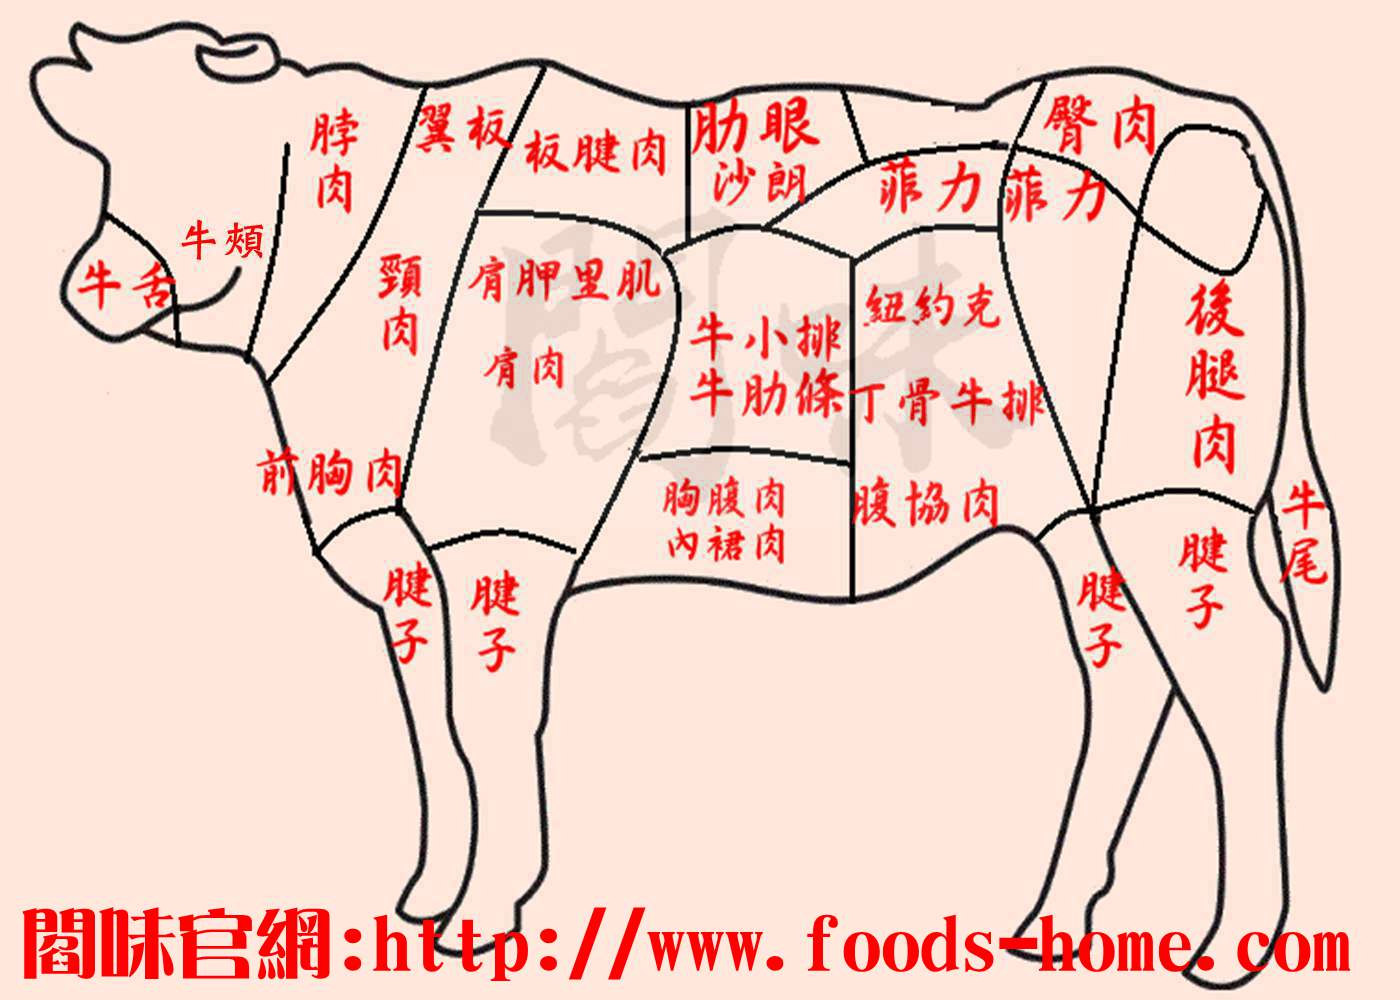 認識市場上常見牛肉名稱及部位適合烹煮方式– 閻味私房料理